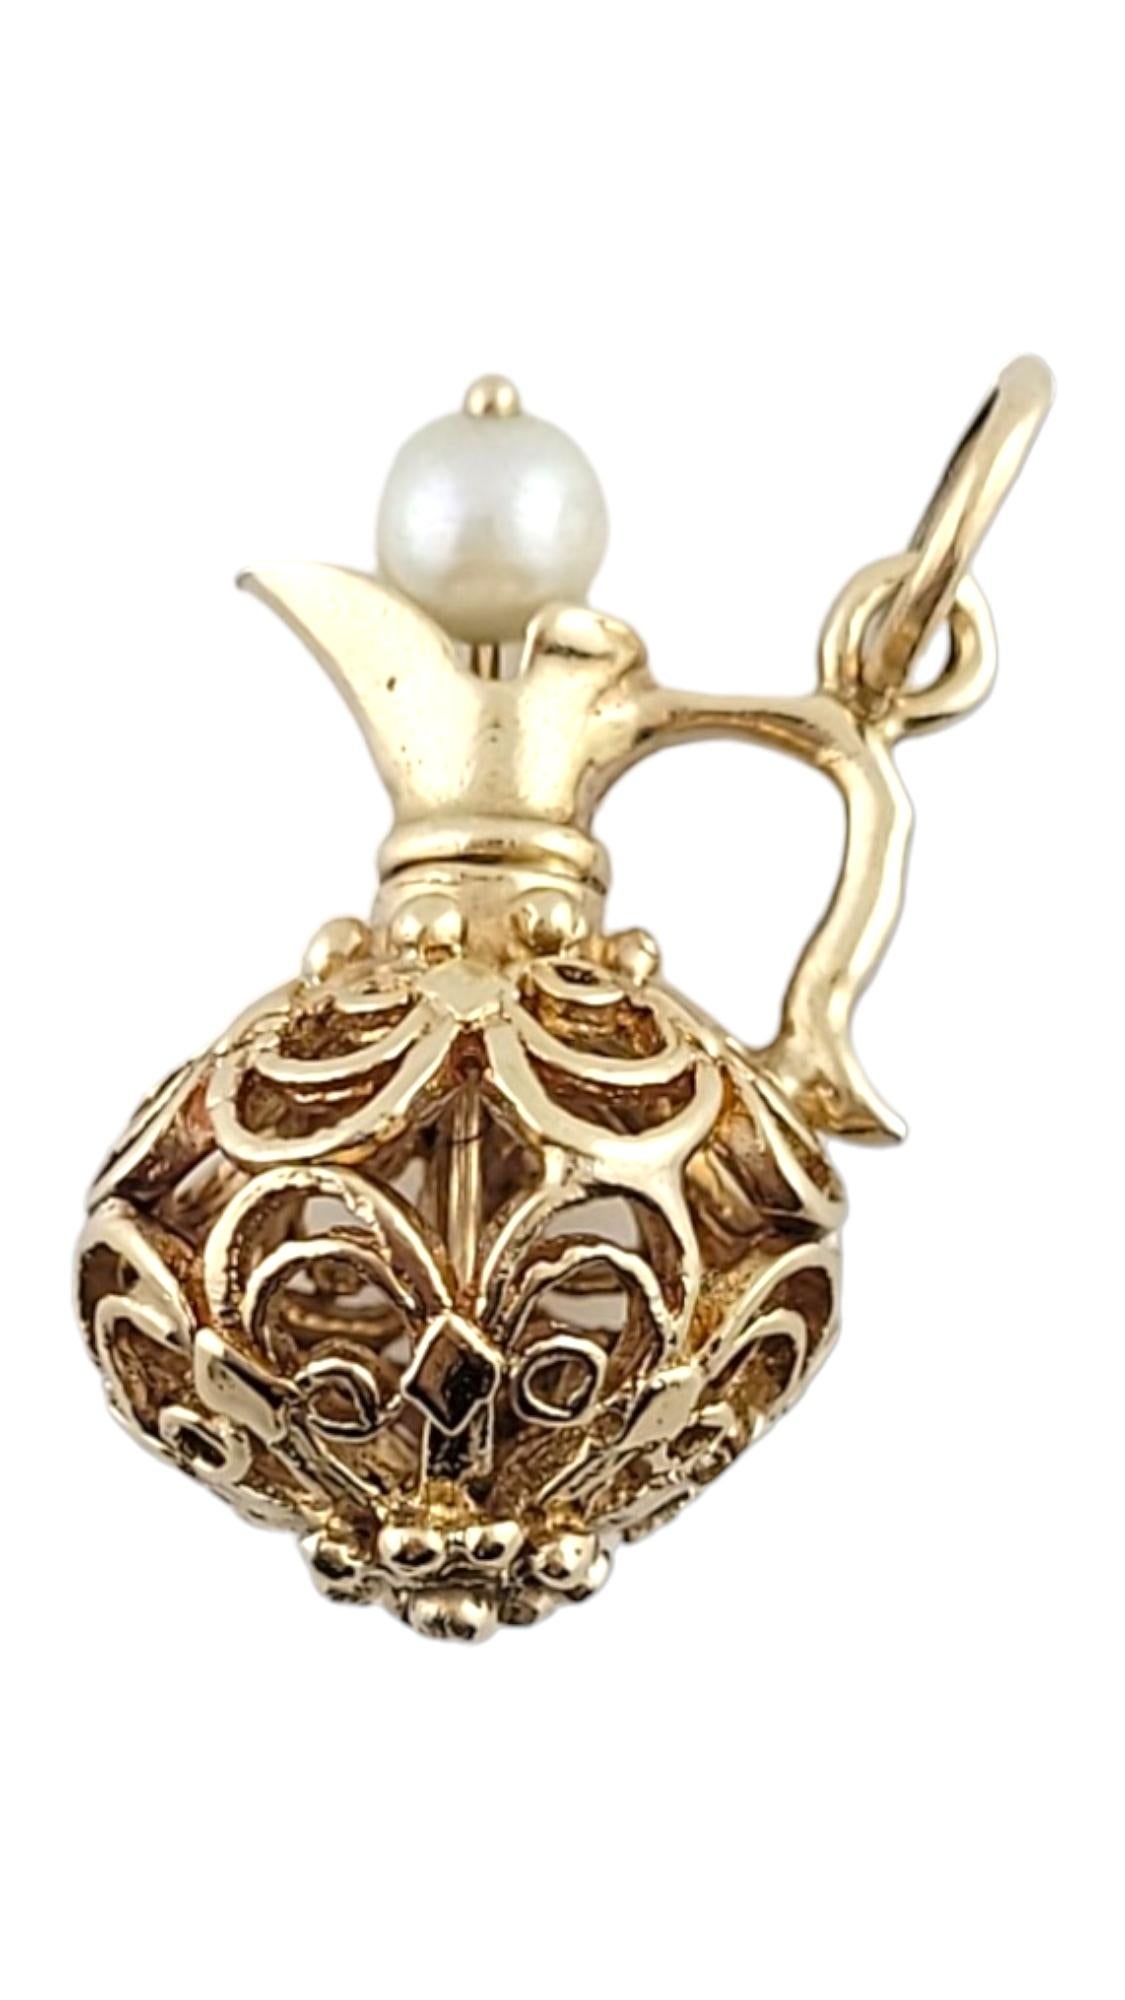 Vintage 14K Gelbgold offenes Design Krug Charme mit Perle #15171

Dieser bezaubernde Krug Charme hat ein schönes offenes Design mit einer herrlichen Perle!
(Perle: 4,5 mm)

Größe: 23,74 mm x 16,45 x 14,42

Gewicht: 4,3 g/ 2,8 dwt

Punze: 14K

Sehr